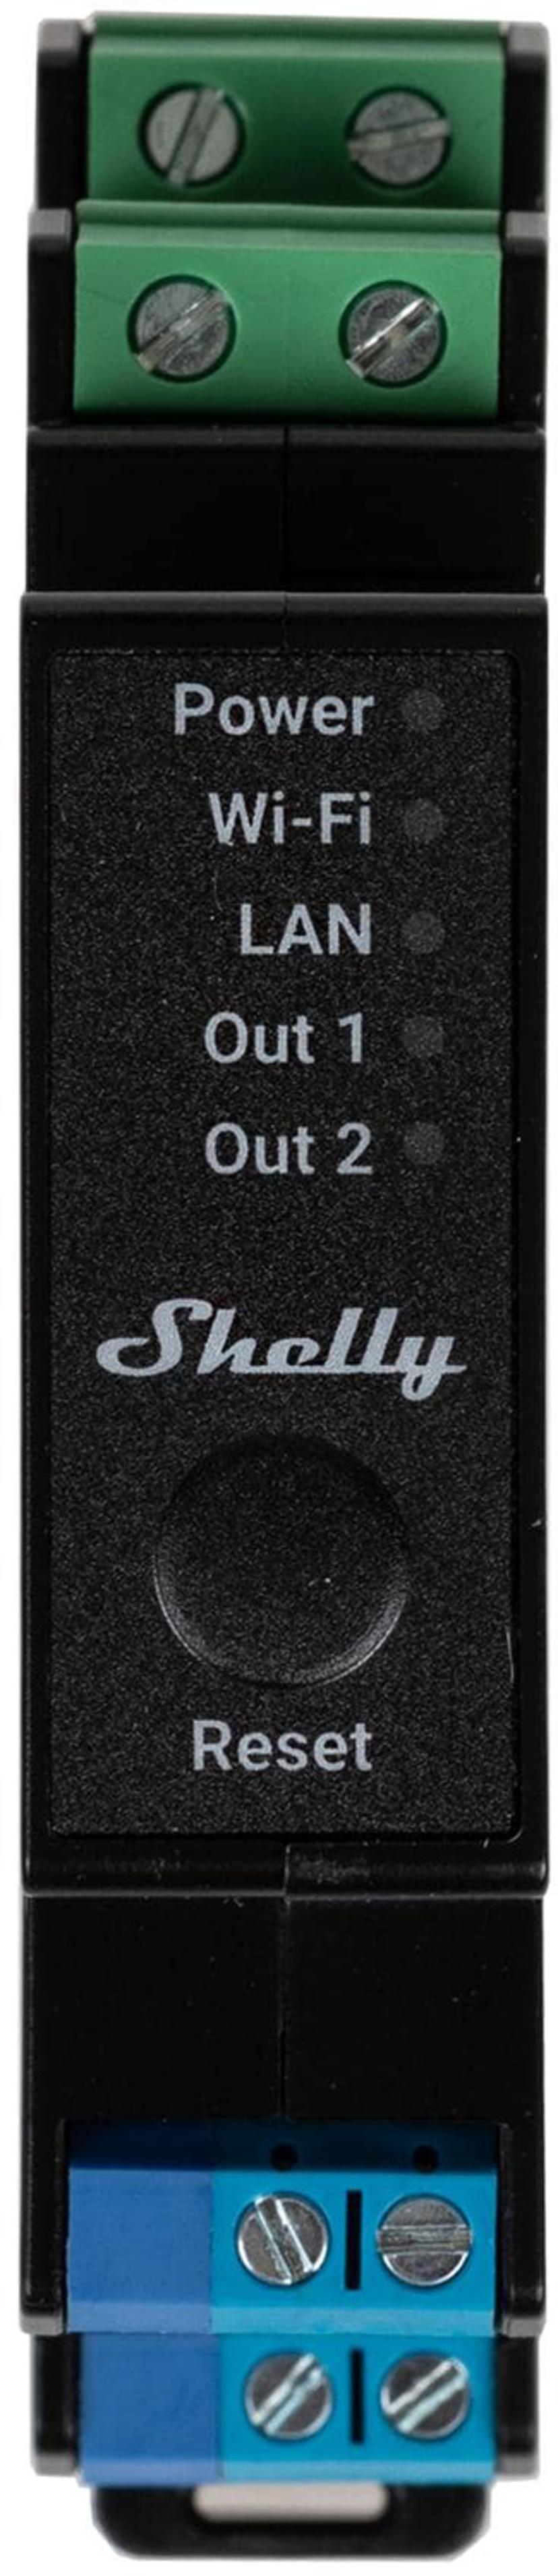 Shelly Pro 2PM Wlan Smart Relay 25A Black